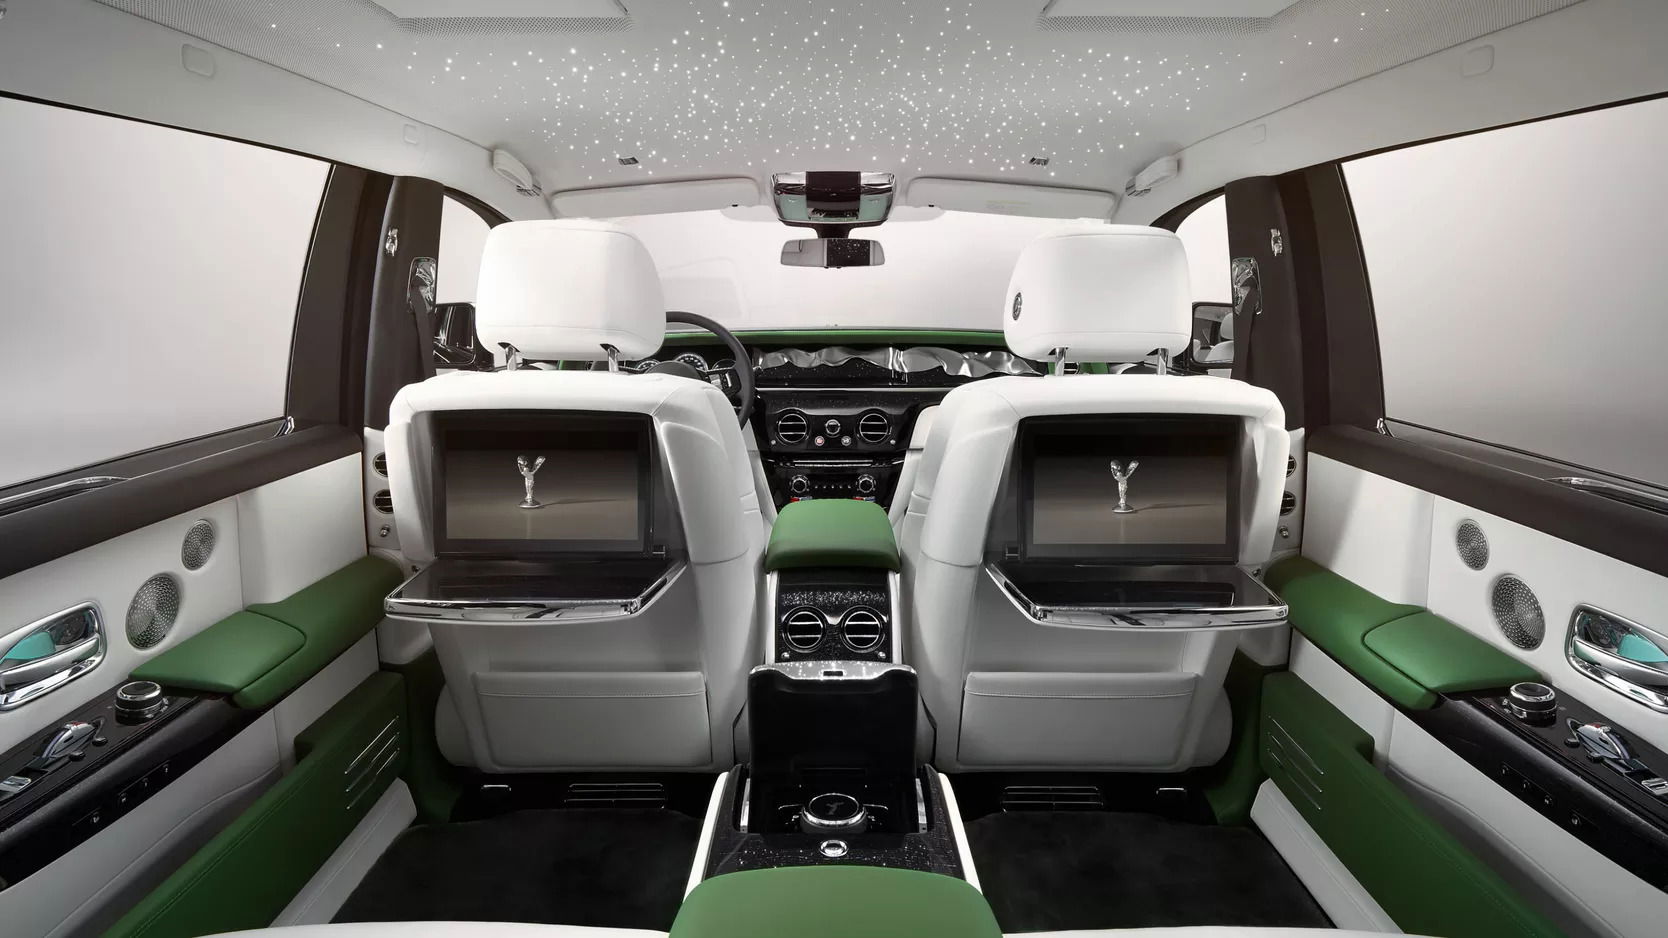 The best luxury sedan - 2023 Rolls-Royce Phantom Extended Series II interior.